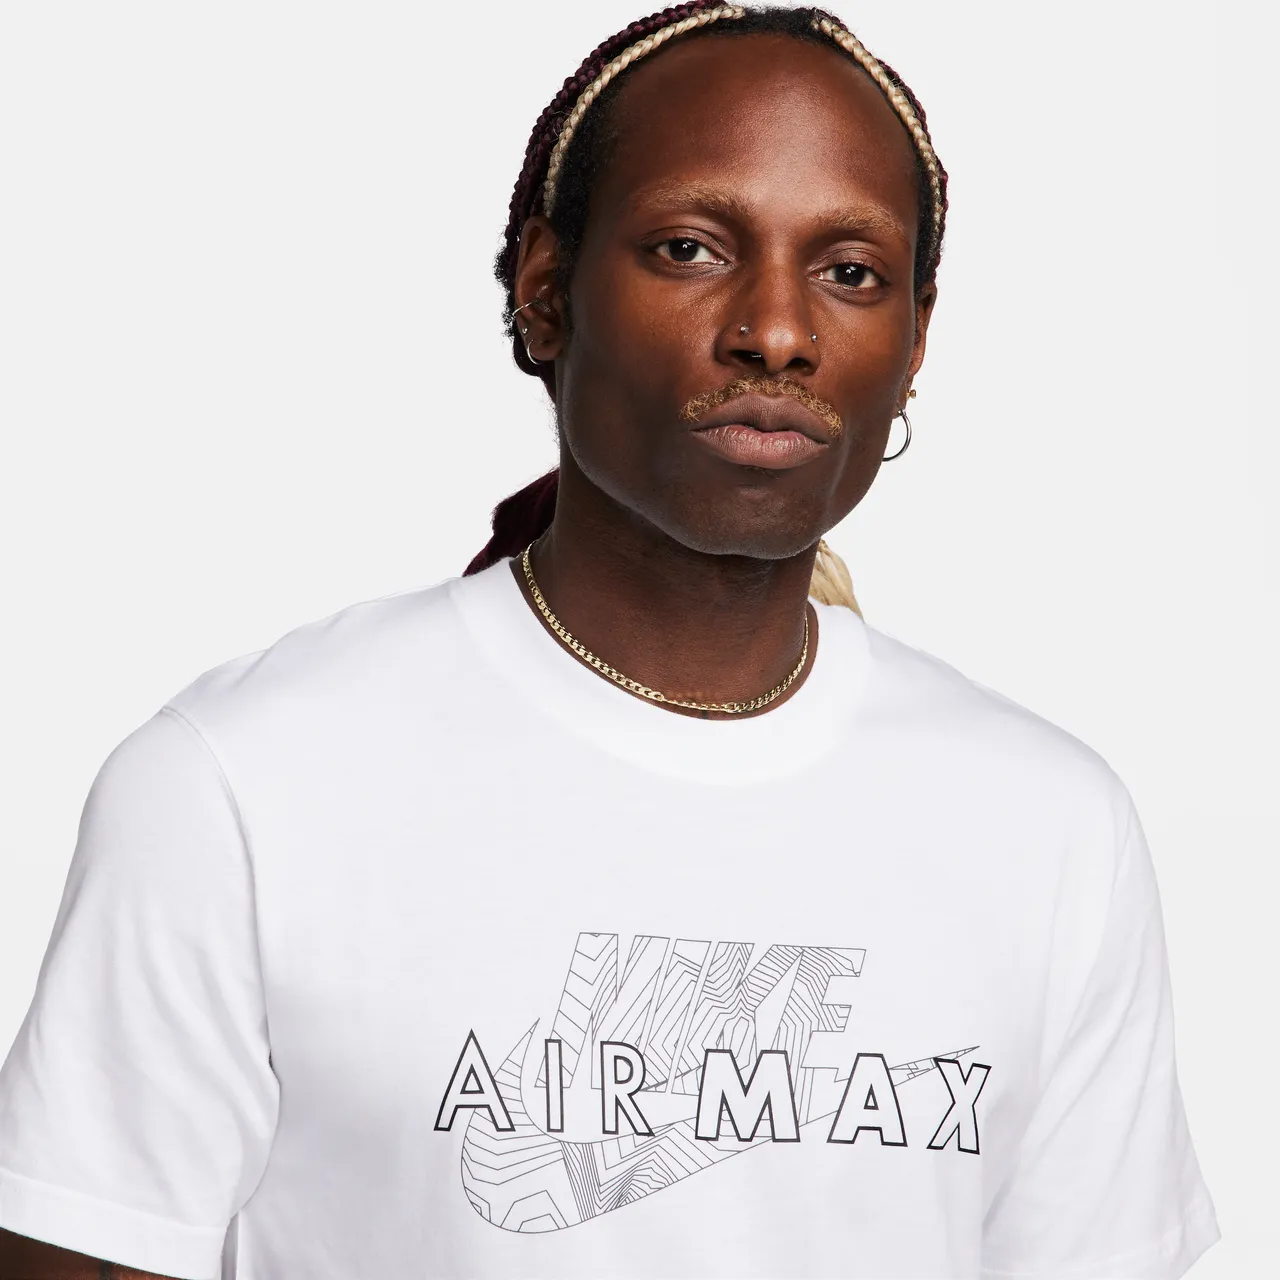 Nike Air Max T-shirt met korte mouwen voor heren - Wit